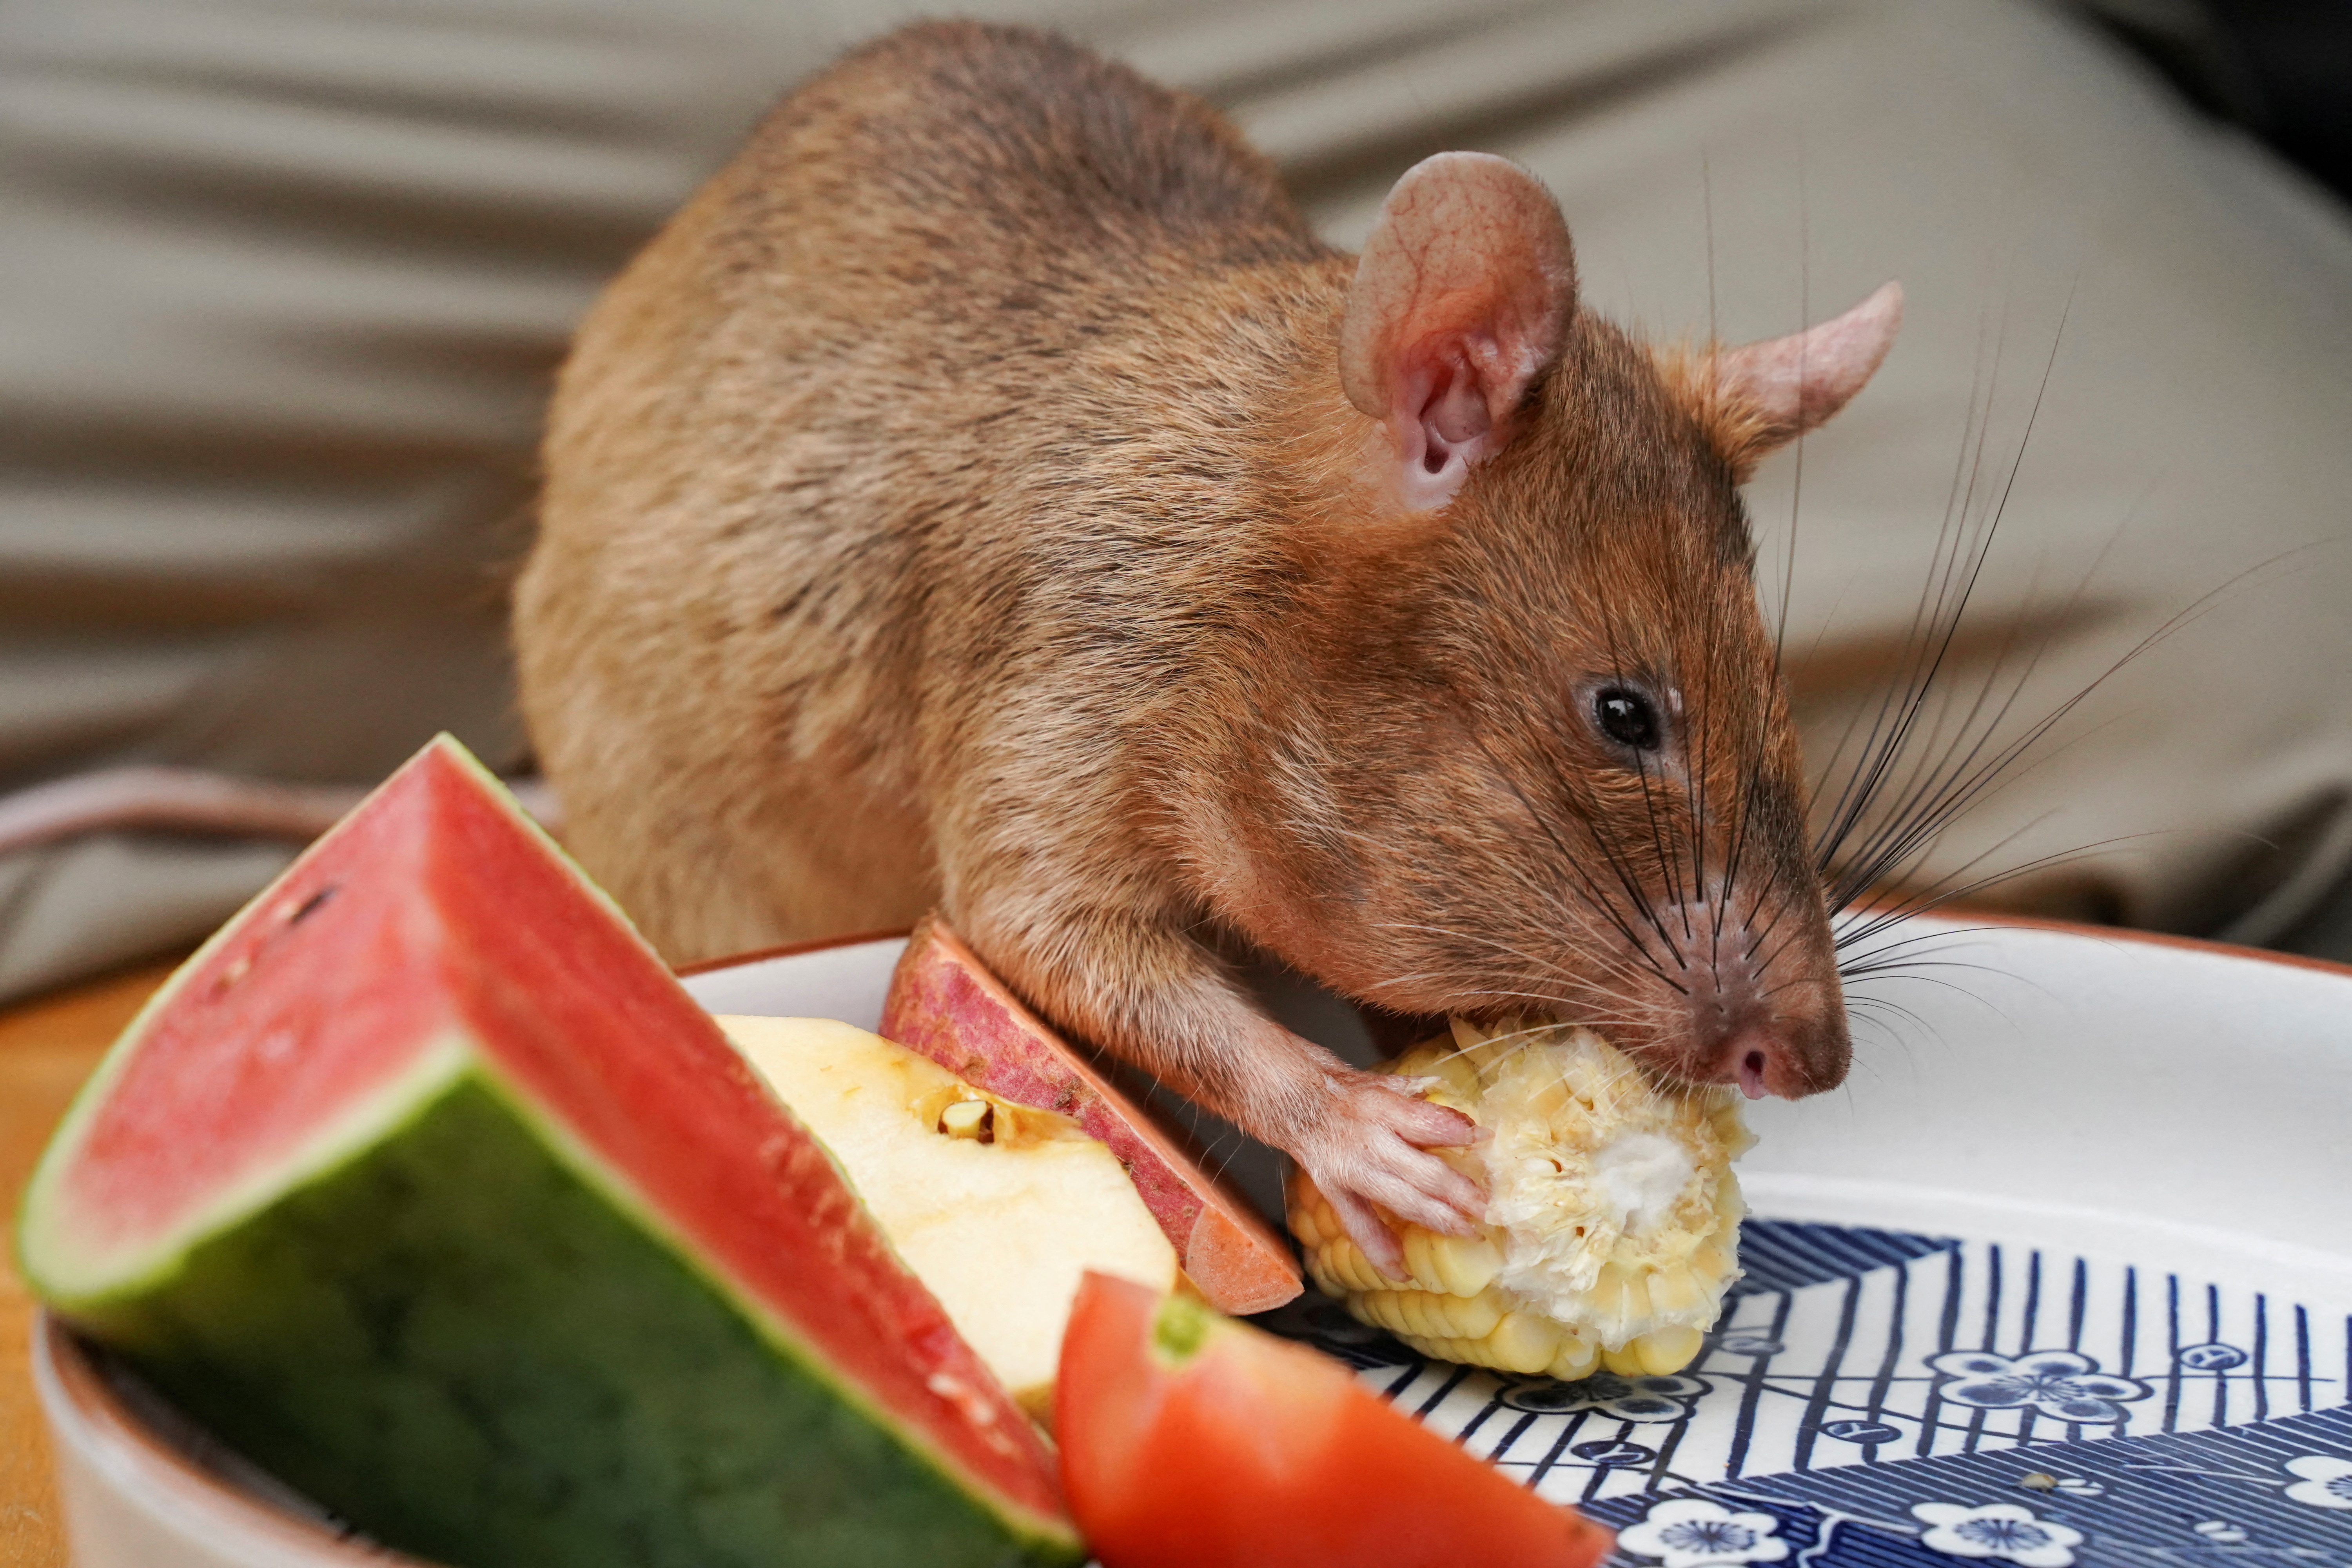 Магава, недавно вышедшая на пенсию крыса для поиска наземных мин, ест кукурузу в туристическом центре APOPO в Сием-Рипе, Камбоджа, 10 июня 2021 г. REUTERS/Cindy Liu